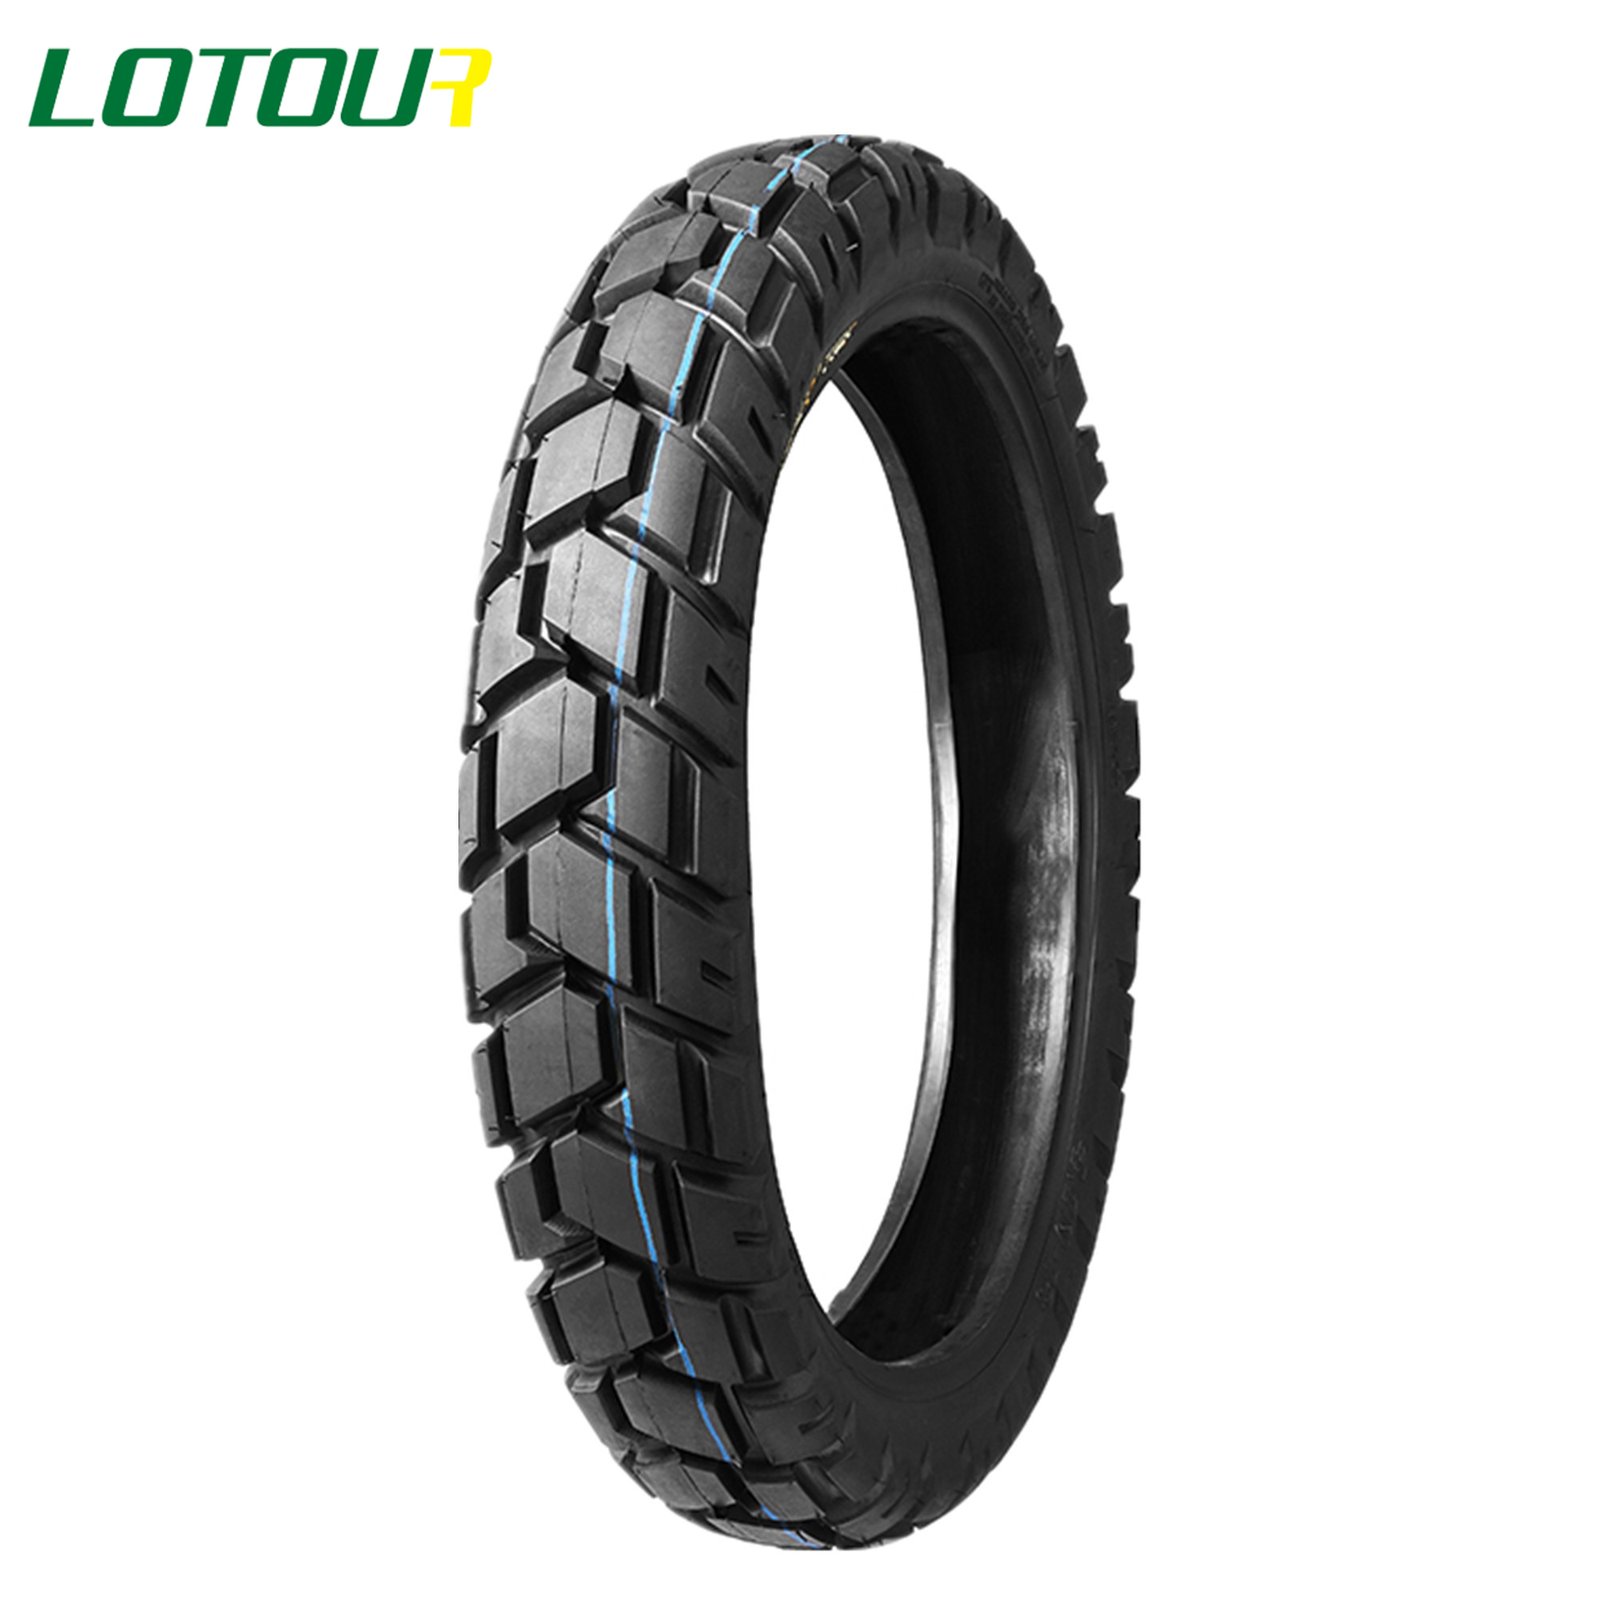 Lotour Tire M3070